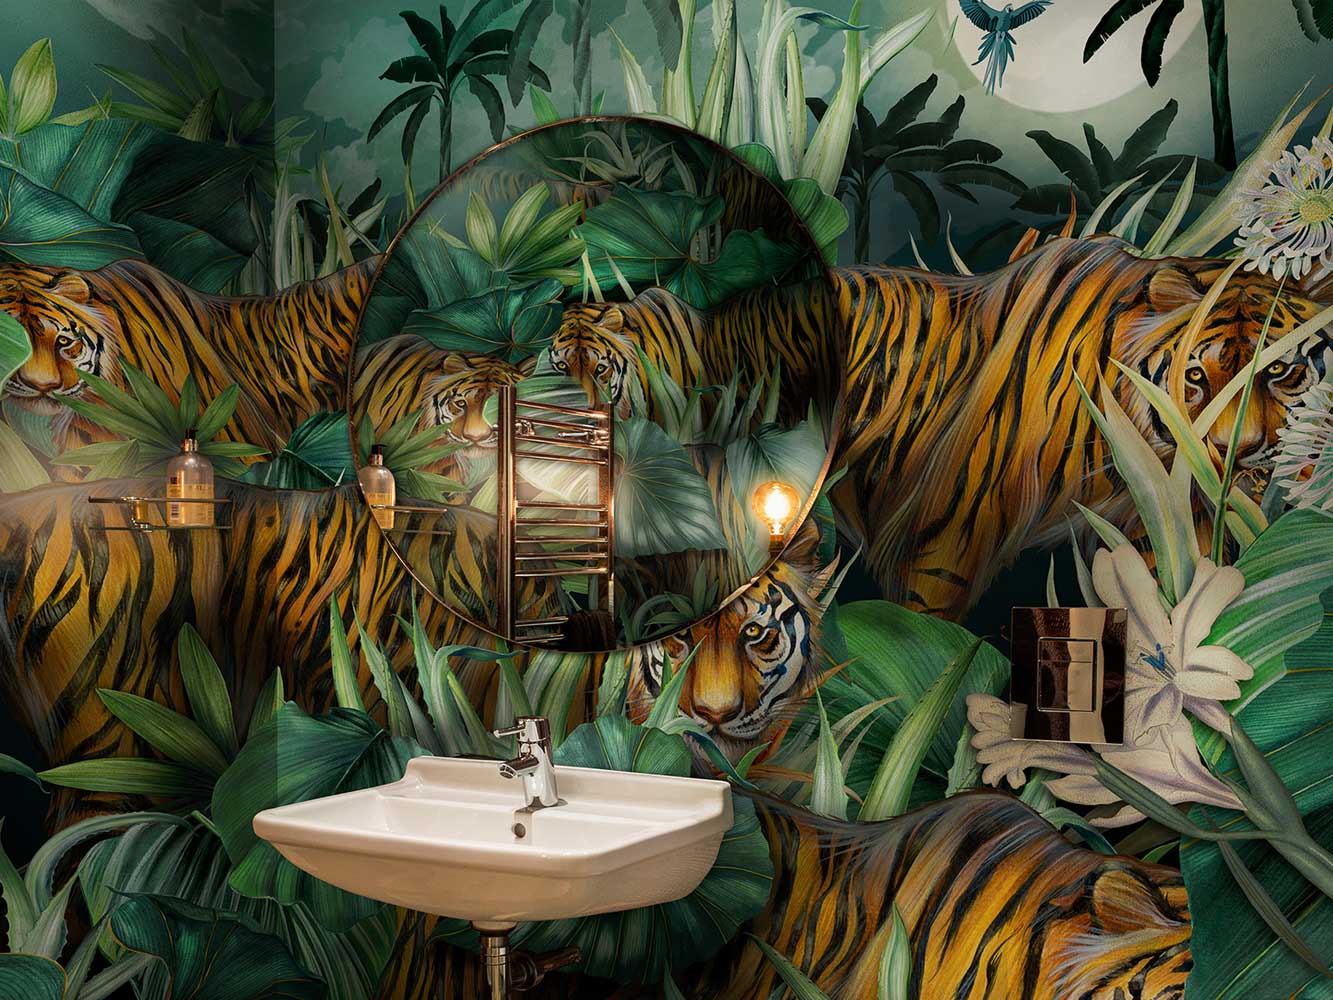 Tiger ambush scene in bathroom interior